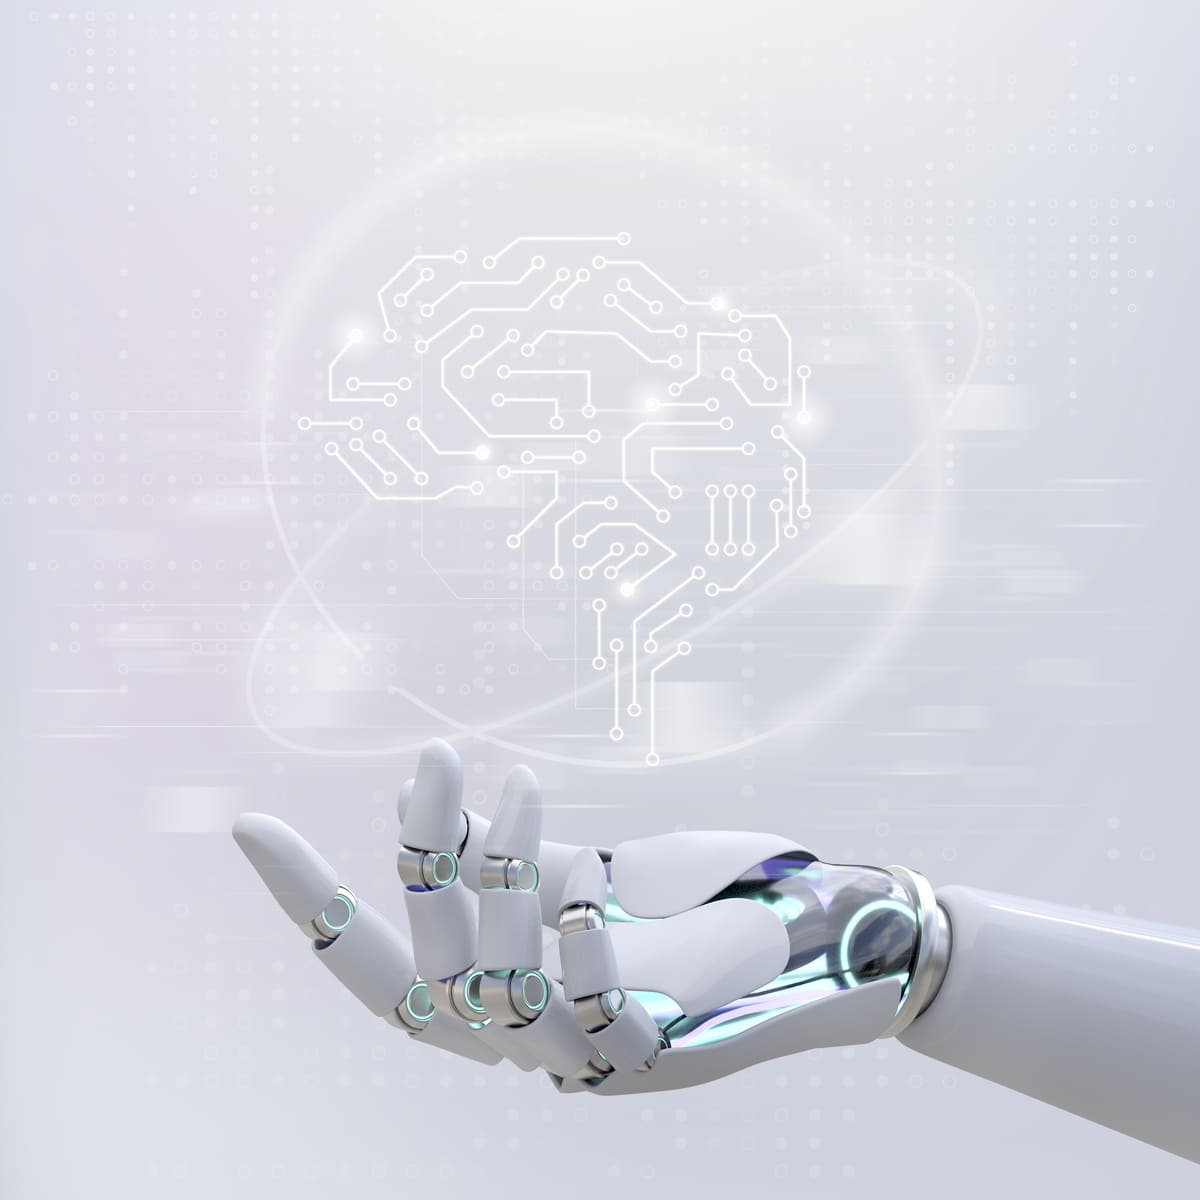 Inteligência artificial e machine learning: qual a relação?